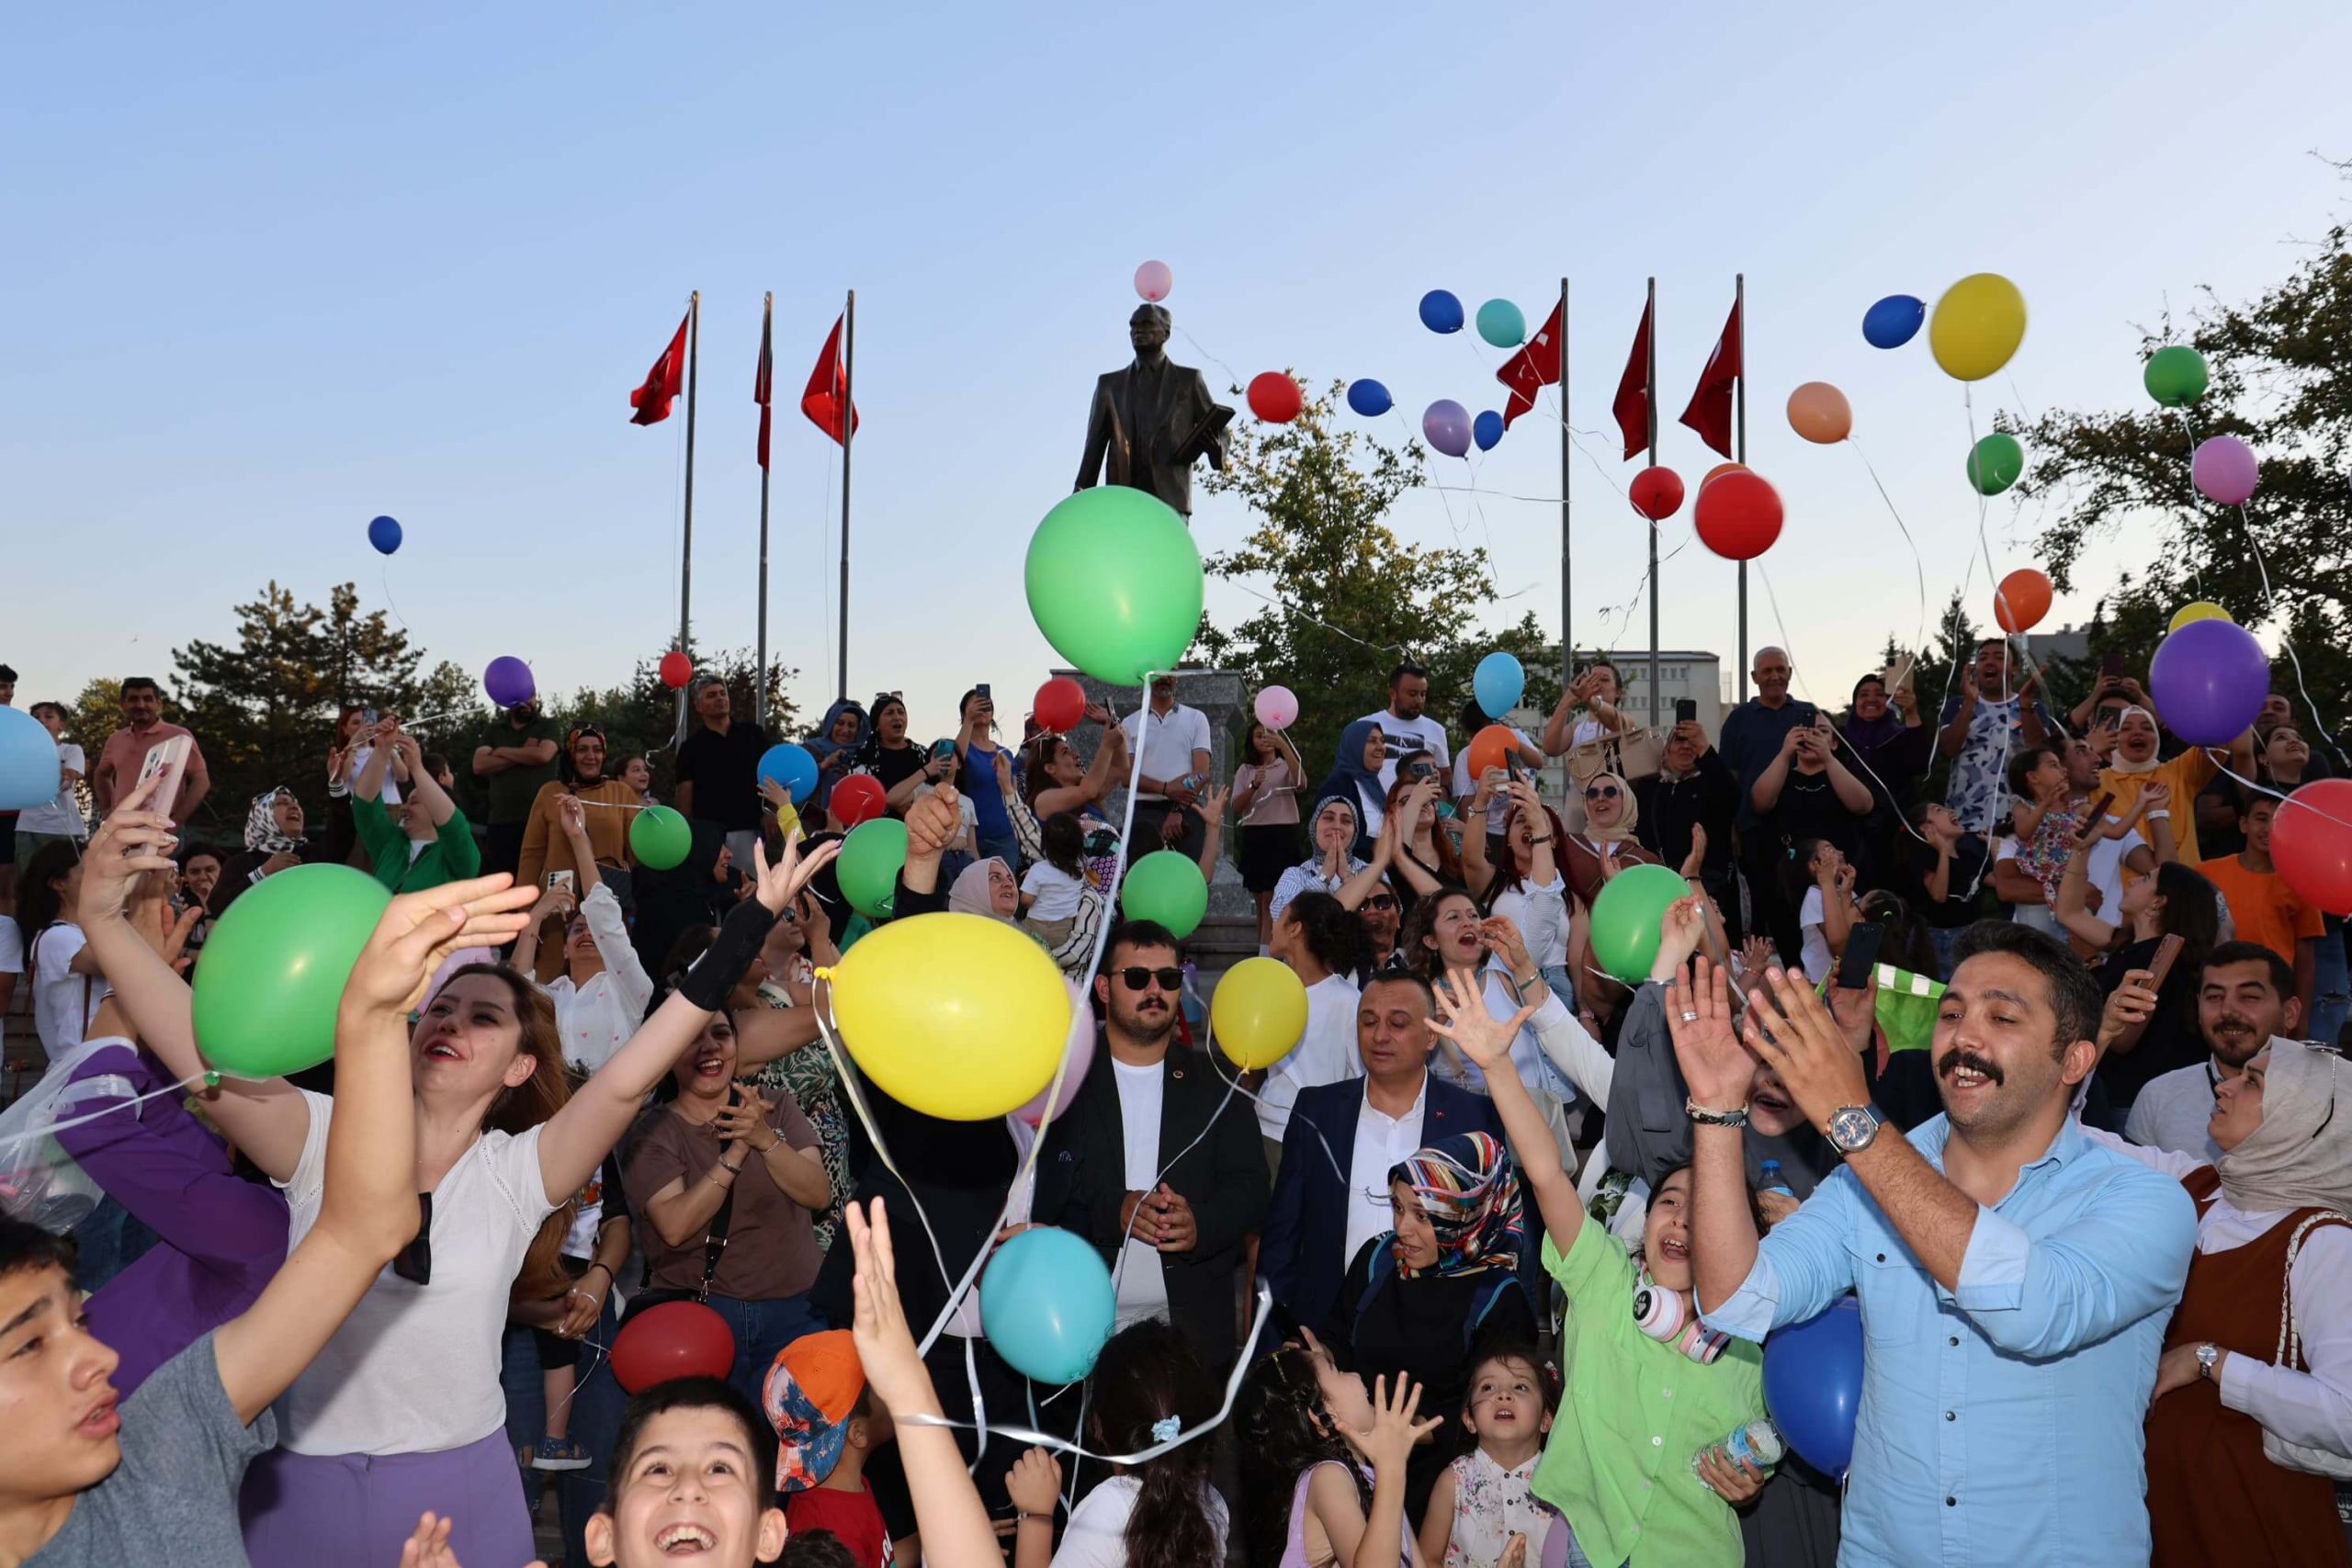 yigit-hamza-kirikkale-sma-dubai-gonderme-etkinligi-2-scaled Kırıkkale'nin SMA Hastası Yiğit Hamza İçin Dubai'ye Gönderme ve Balon Uçurma Etkinliği Yapıldı